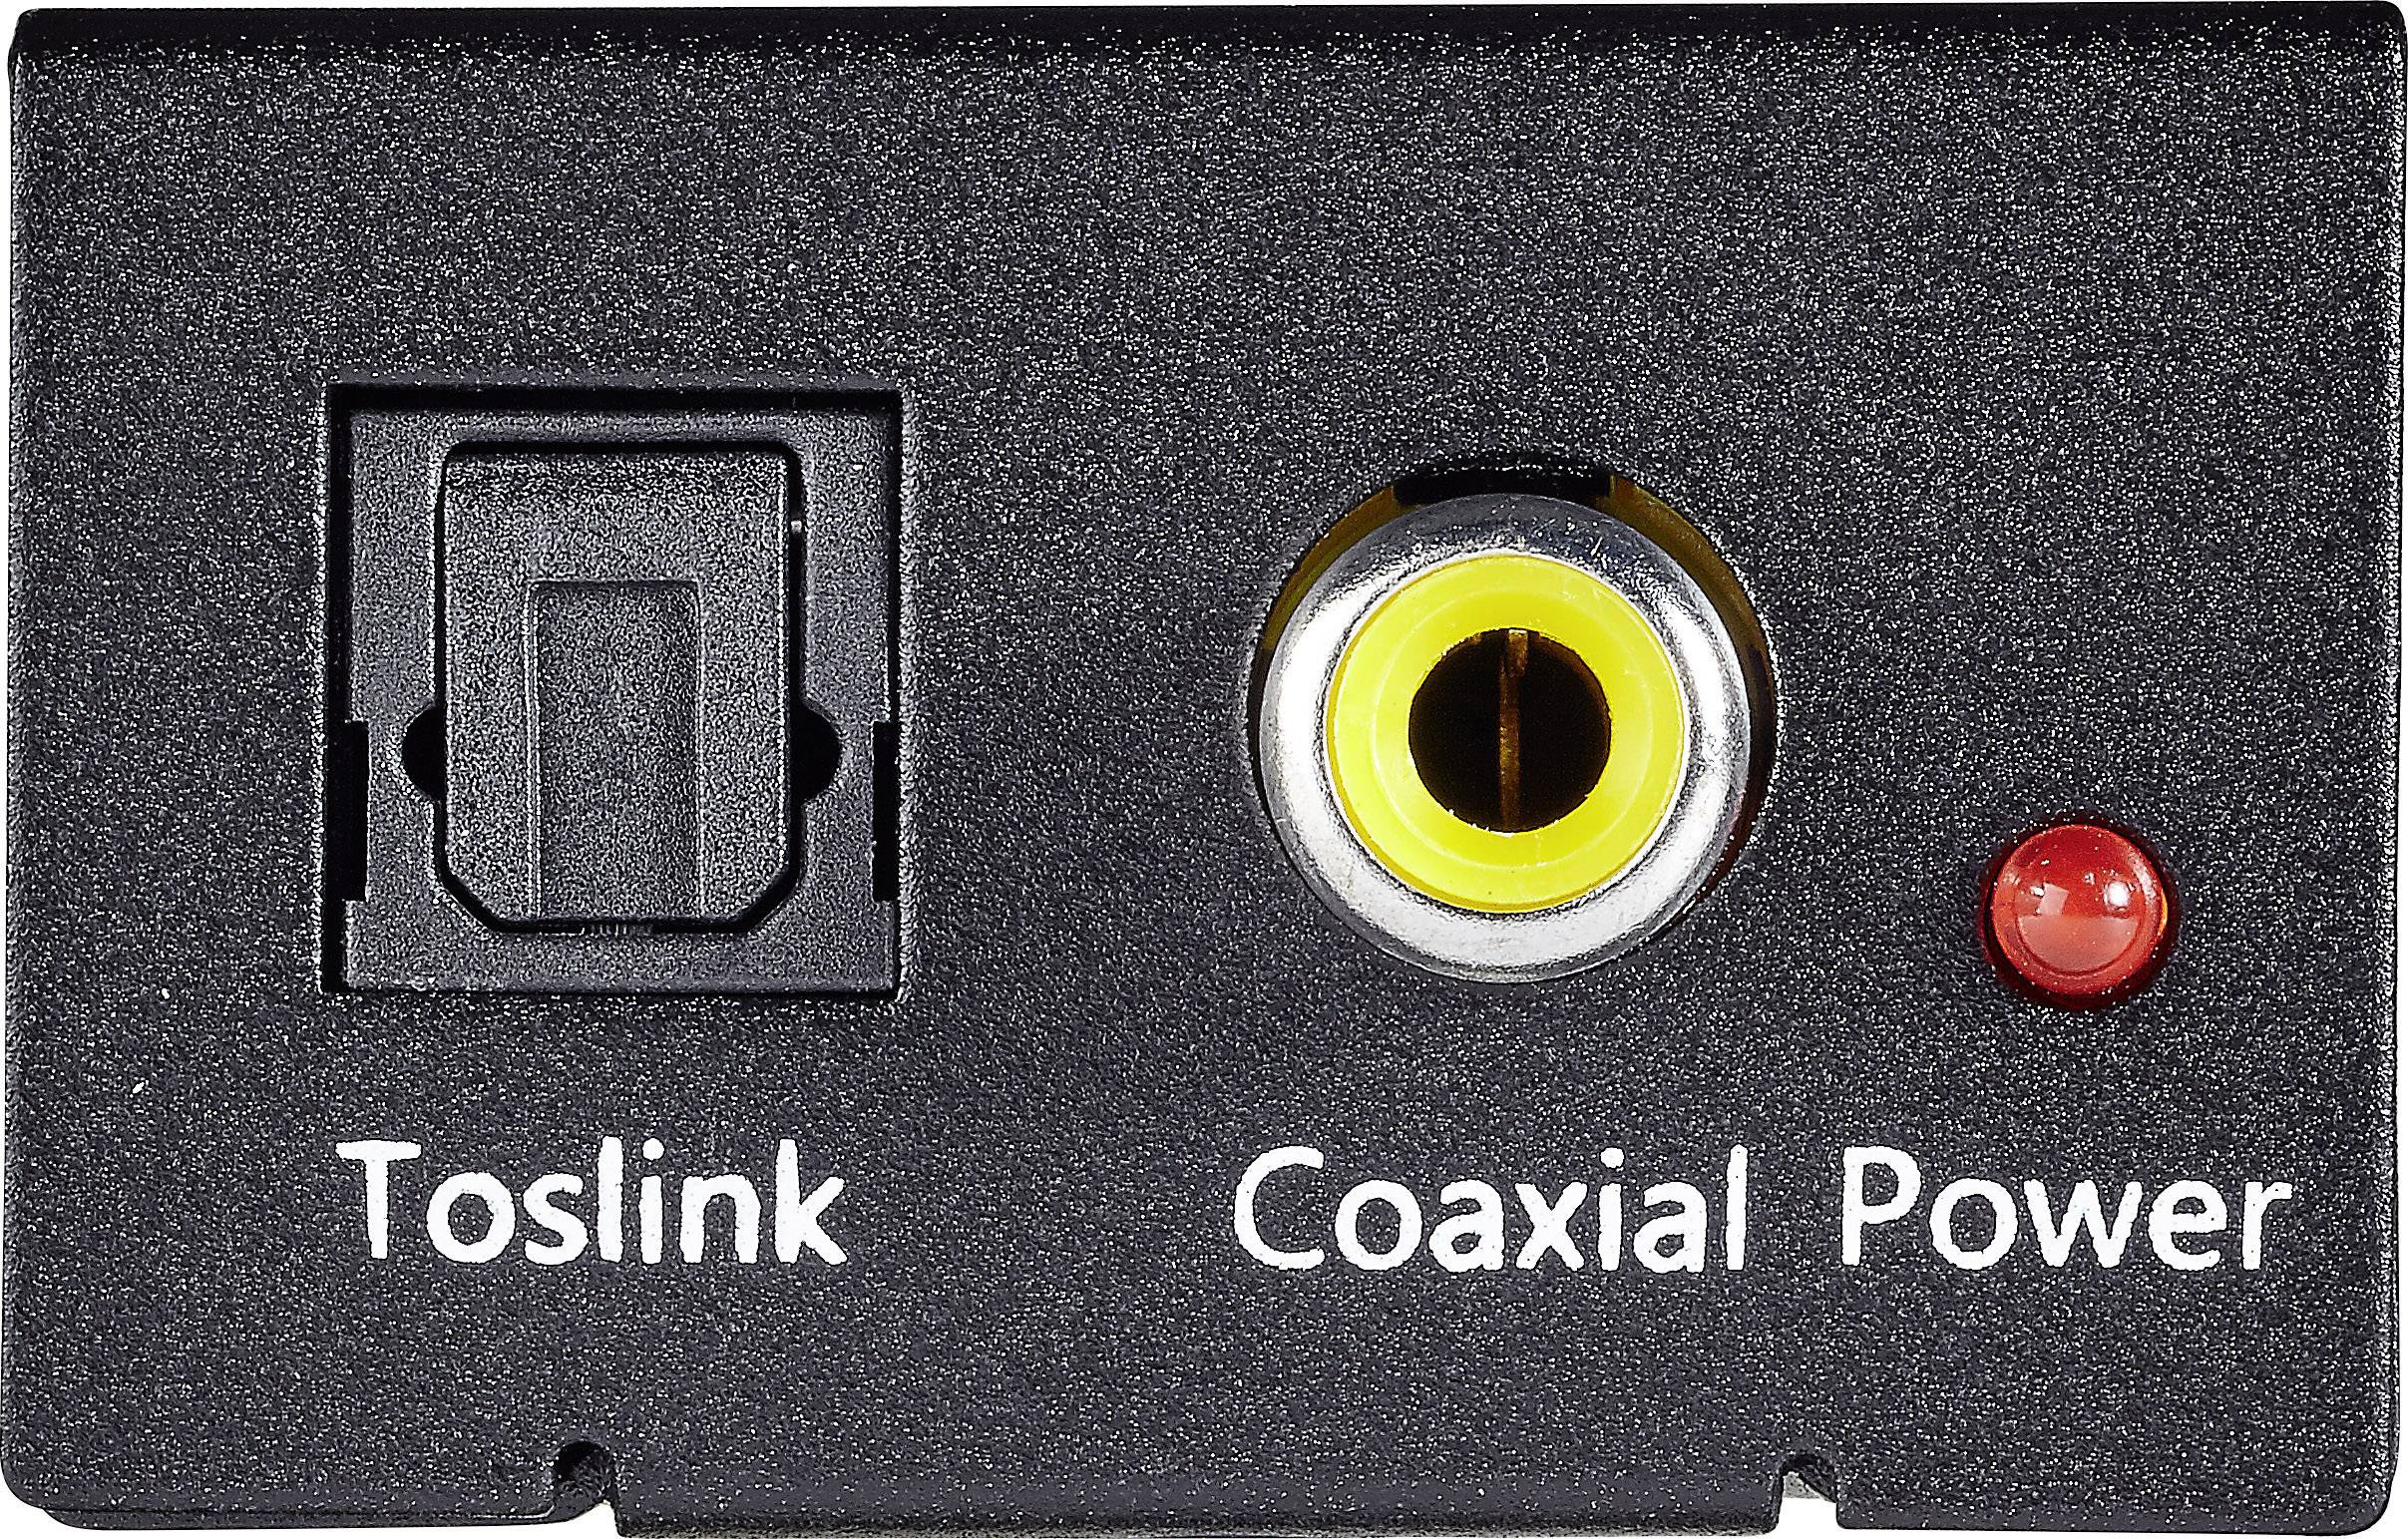 Odt toslink. Toslink (s/PDIF оптический). Toslink x96s. Toslink s/PDIF разъем. RCA (S/PDIF коаксиальный).